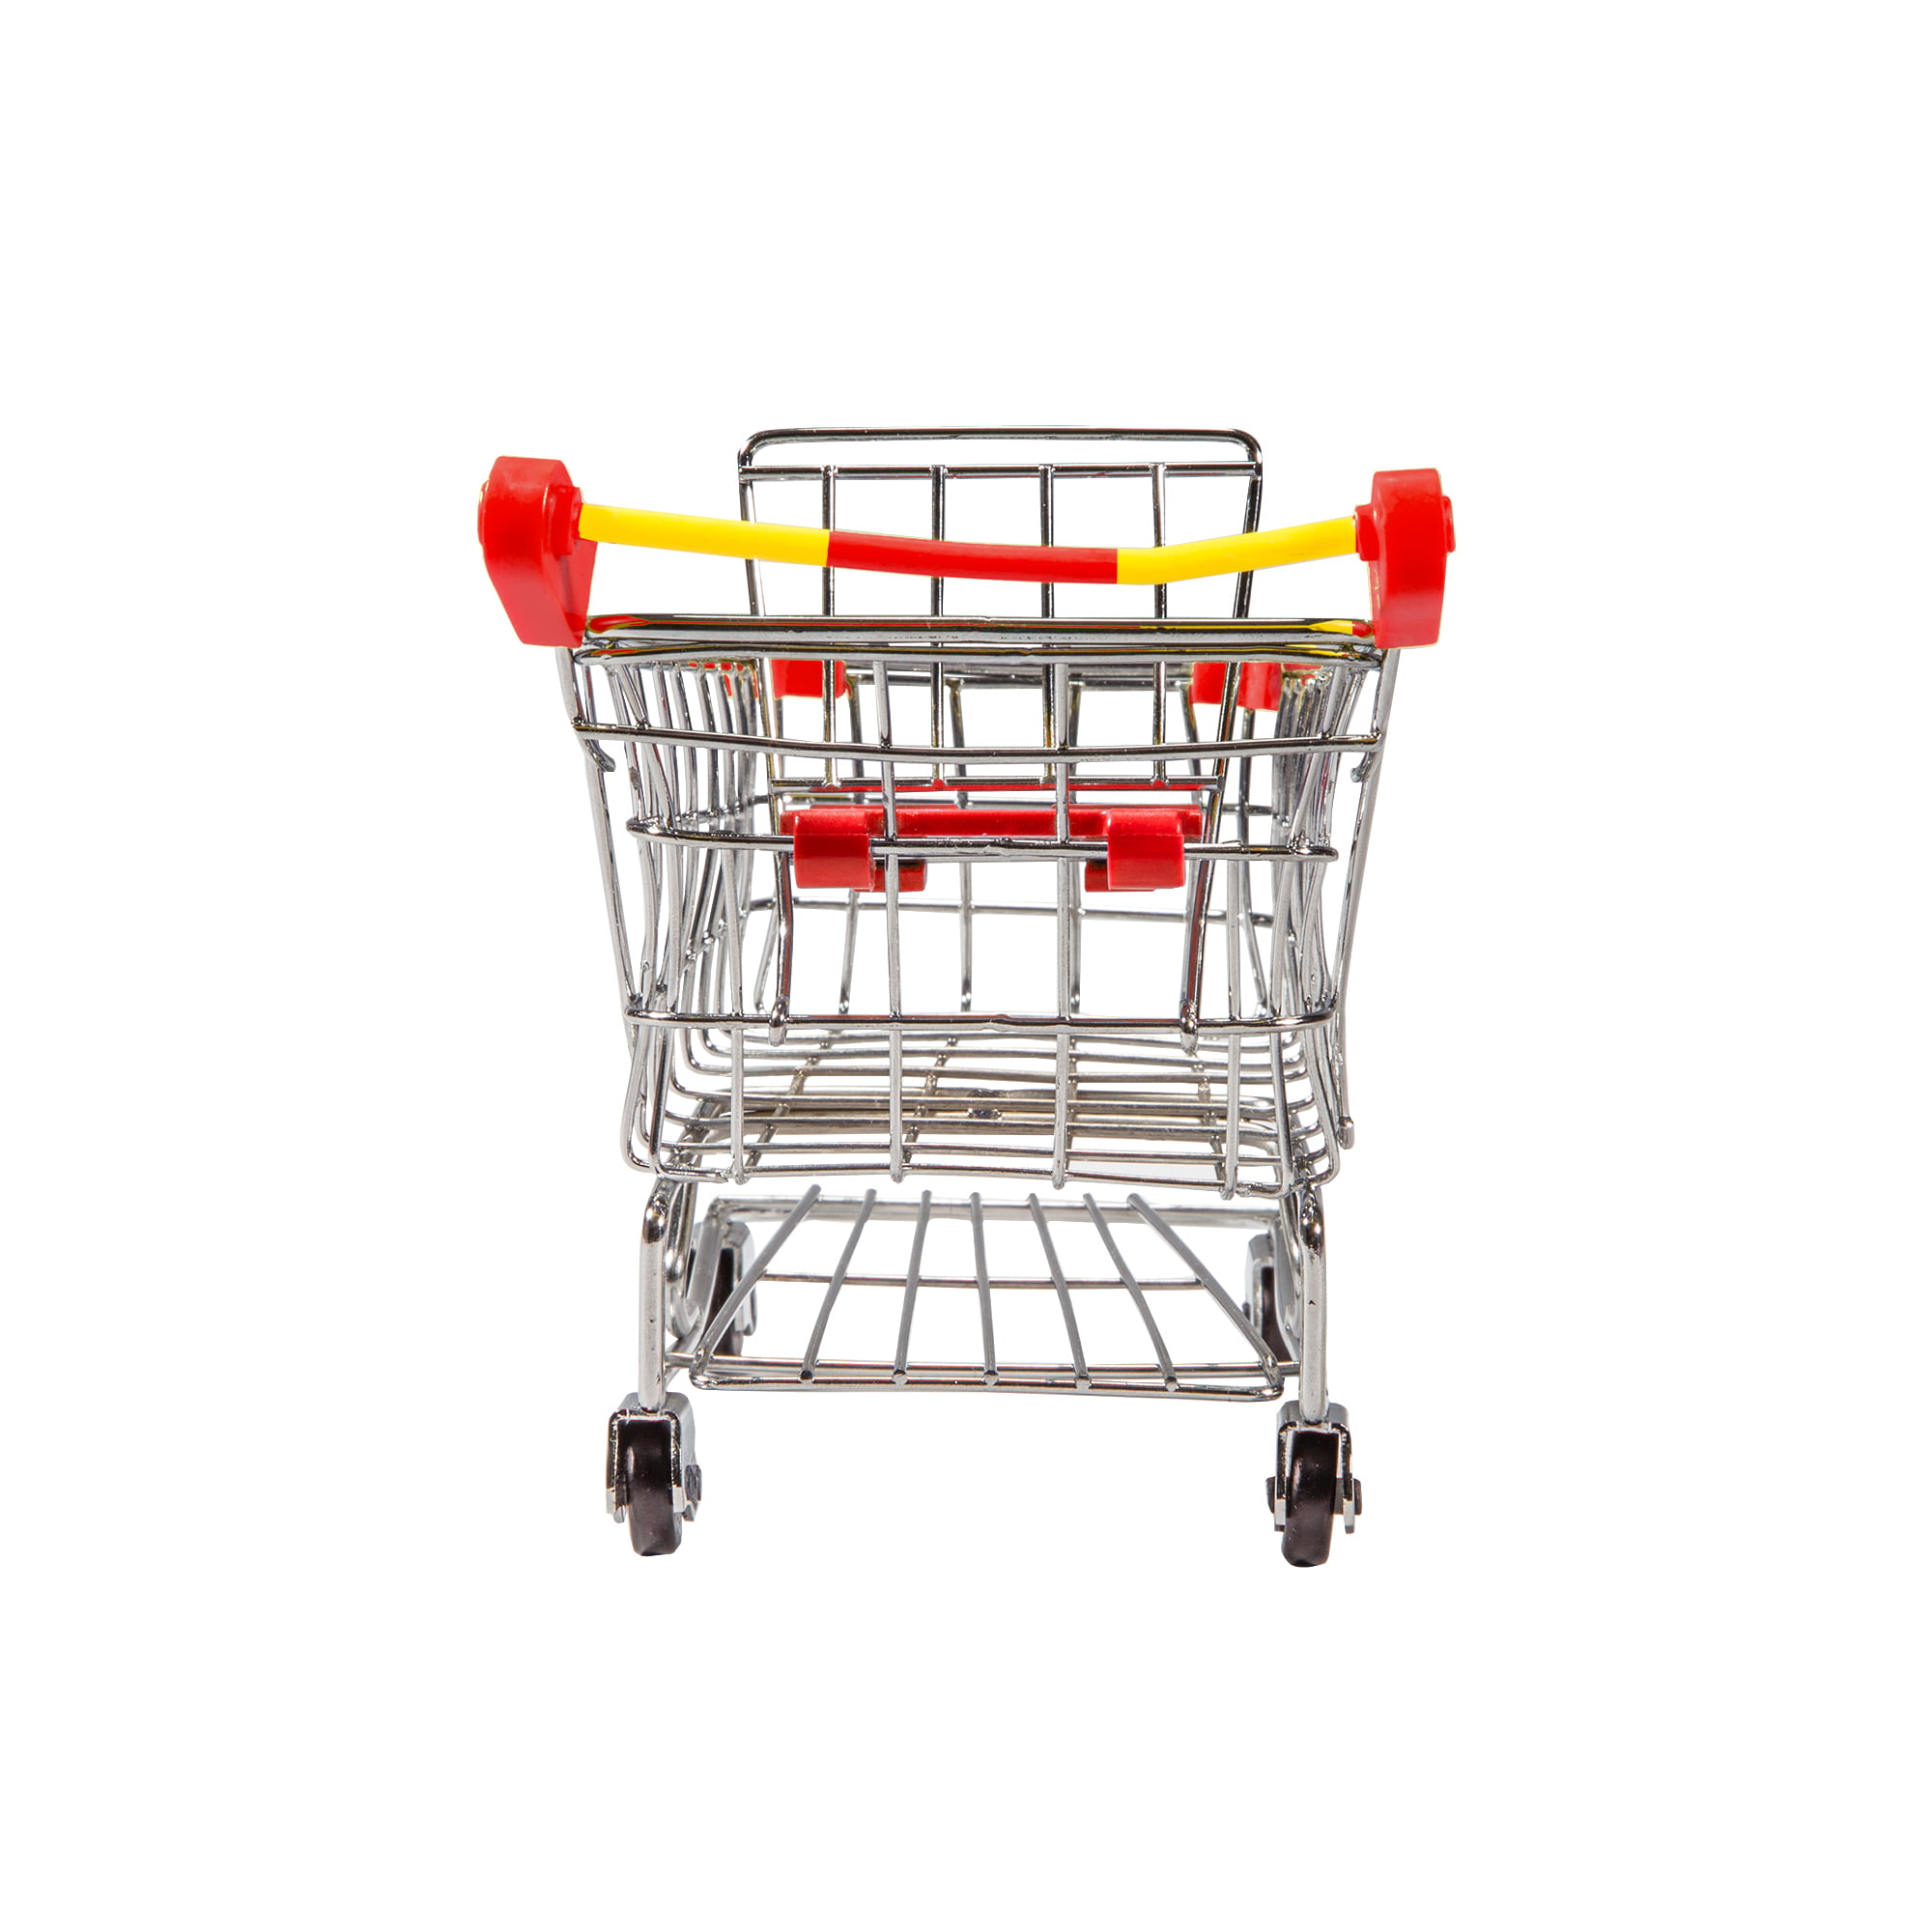 McFarlane Fortnite Warpaint Fireworks Team Leader Shopping Cart 2 Action Figure for sale online 